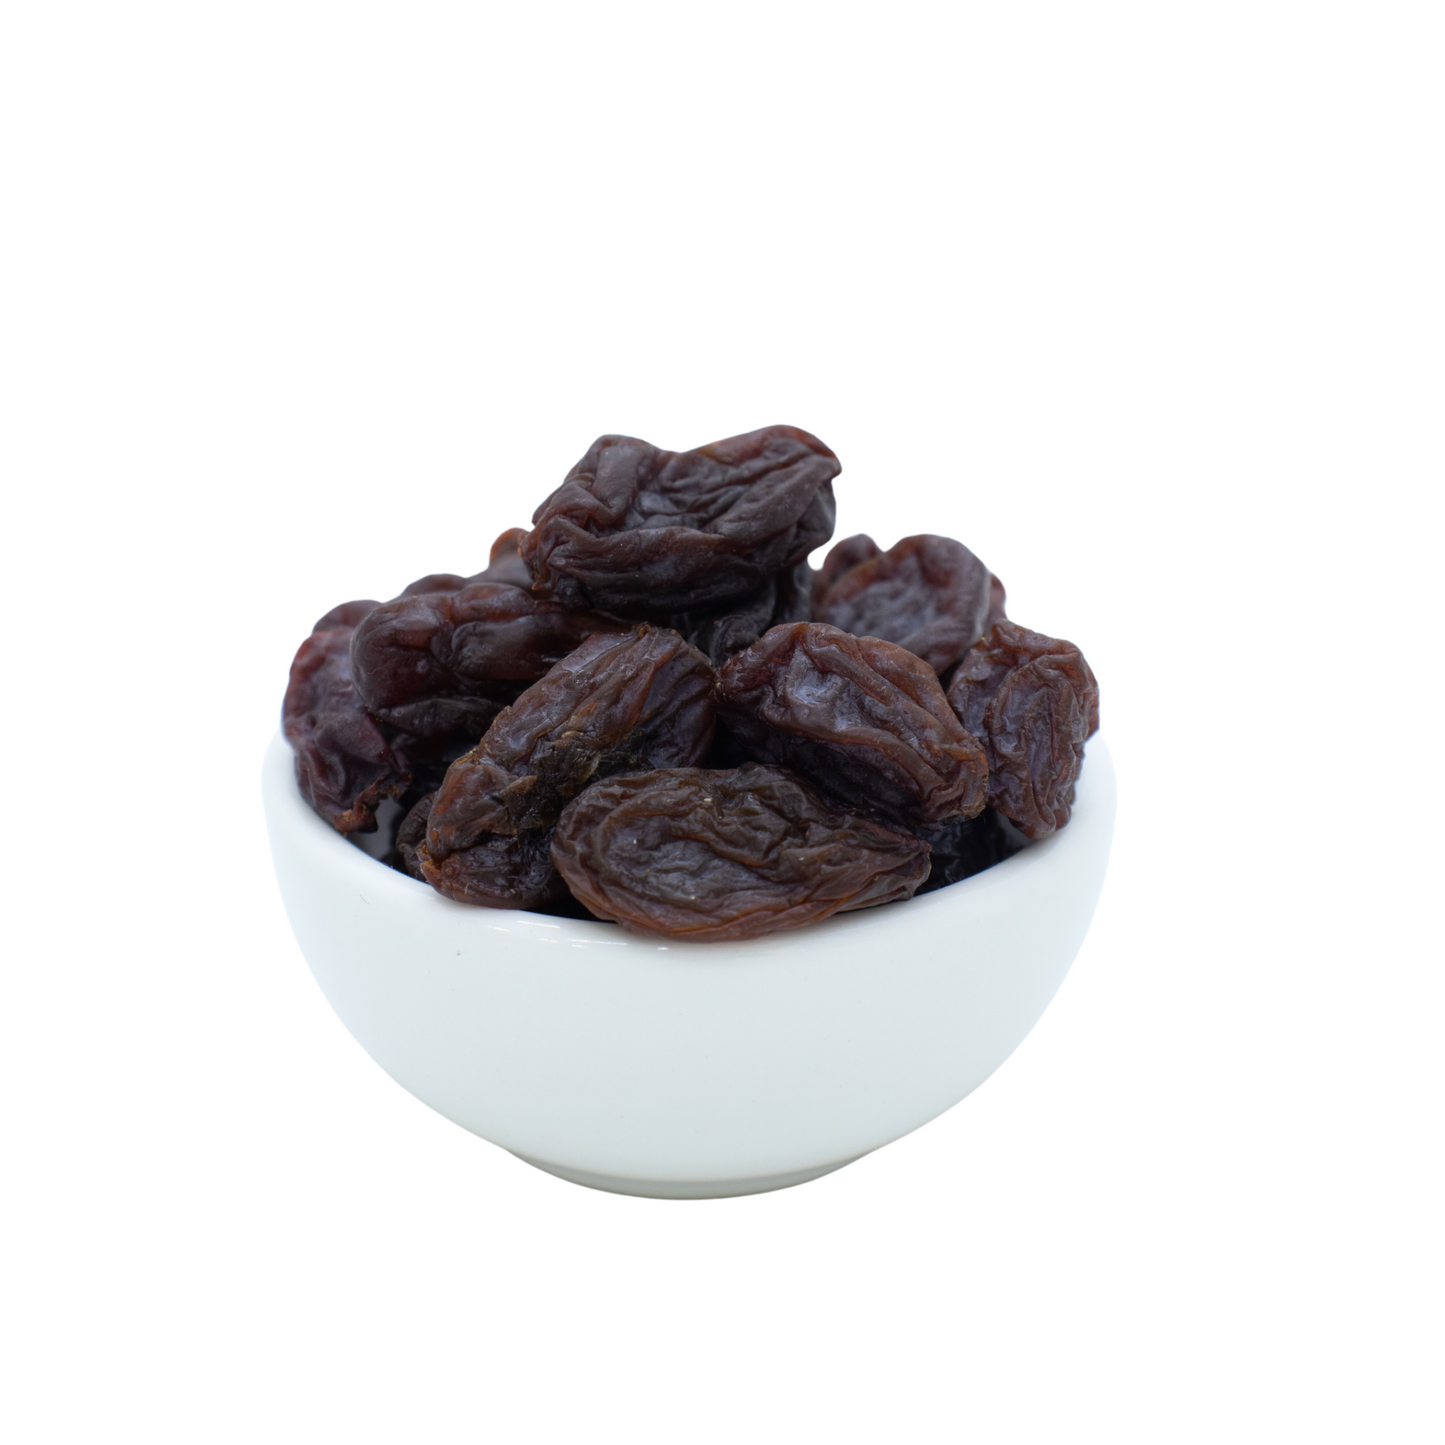 Sun-dried Brown Raisins (Premium Grade)